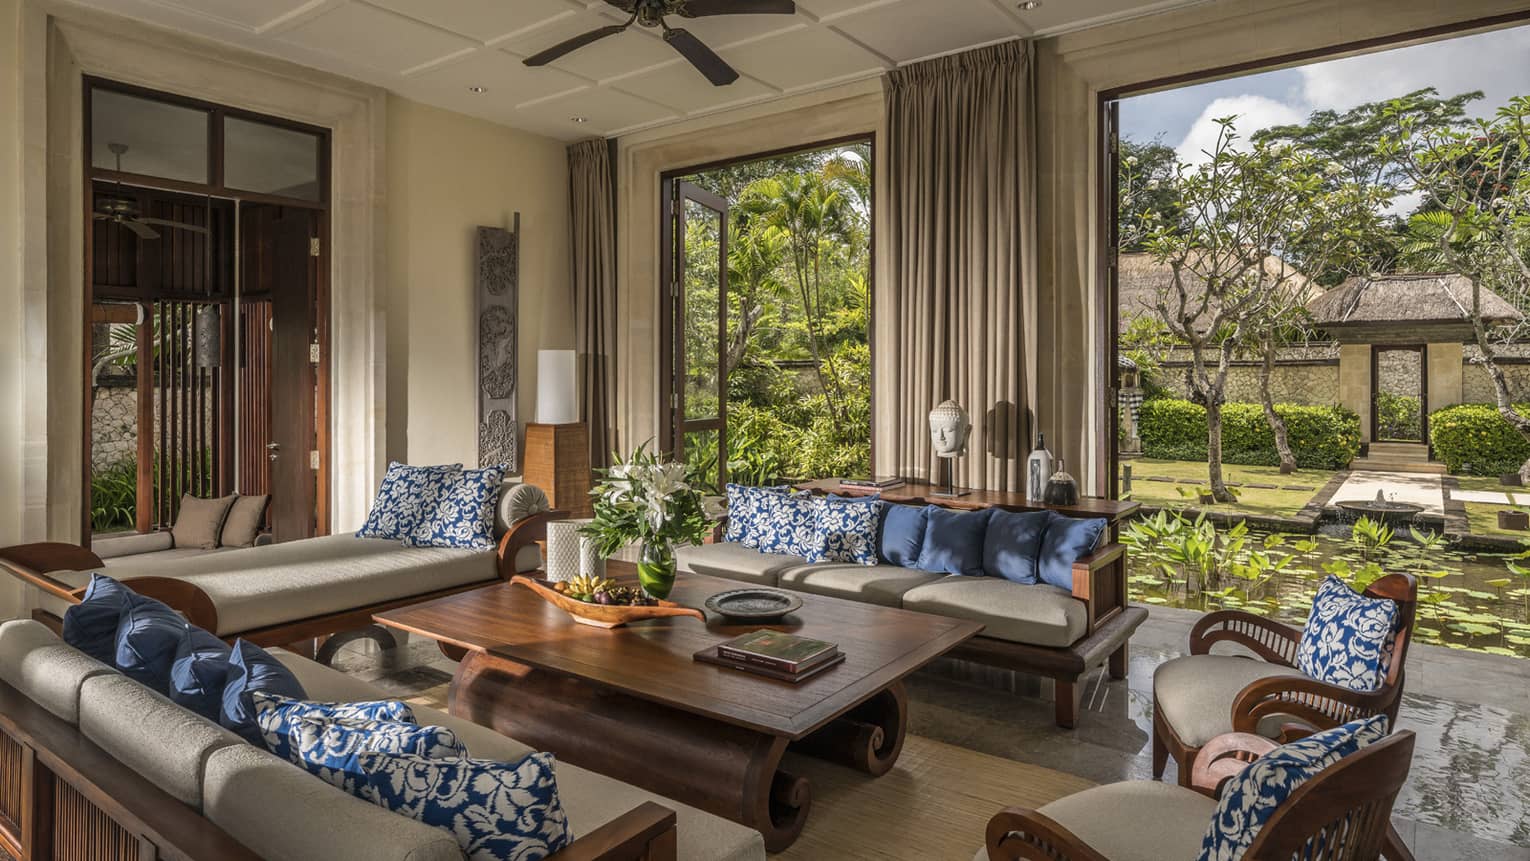 Sofas, table in open-air three-bedroom garden residence villa living room